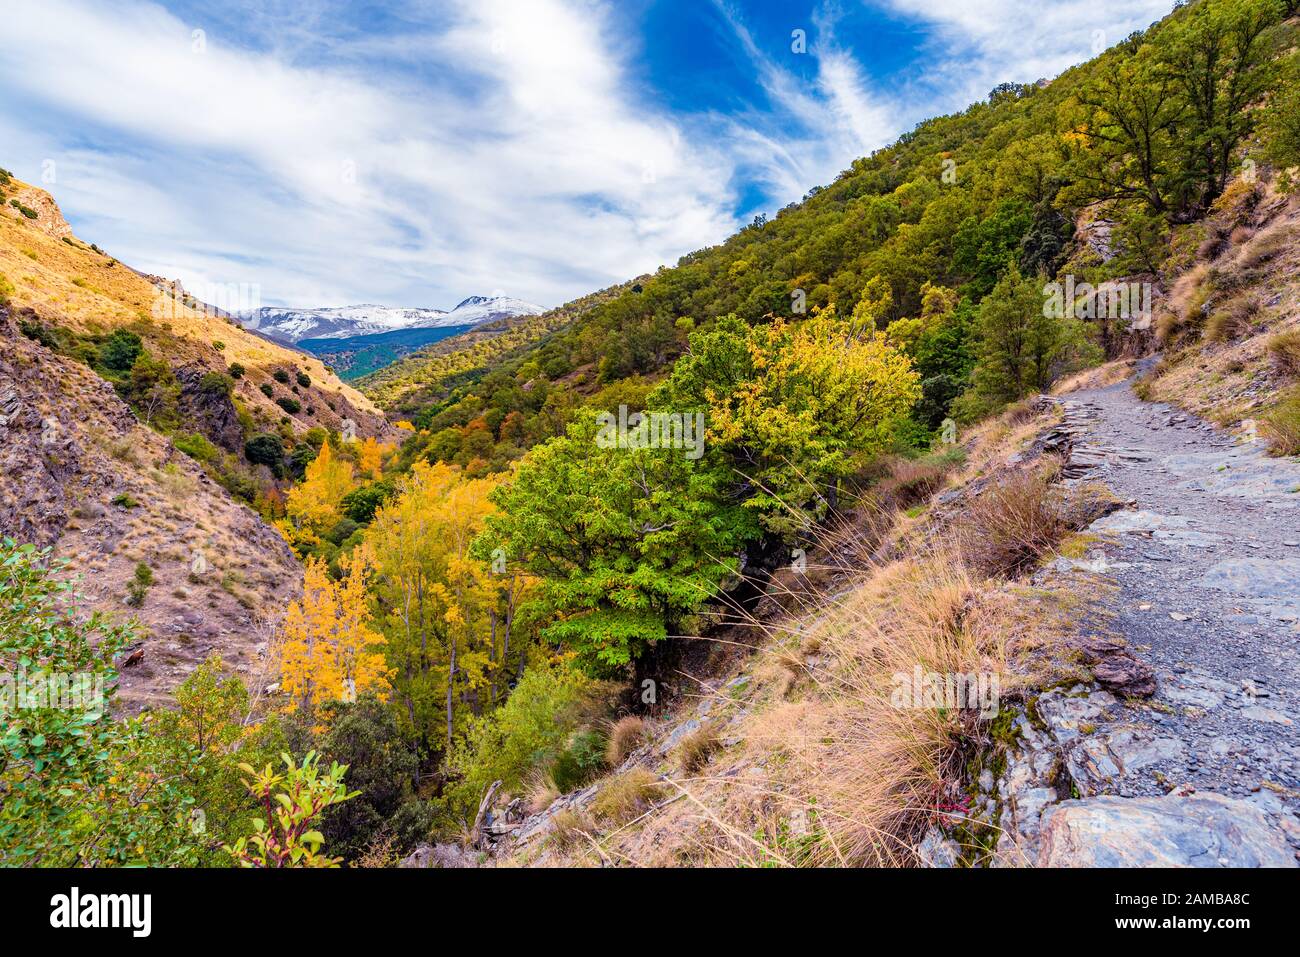 Güéjar-Sierra, Espagne - 27 Octobre 2019. Belle vue depuis le sentier de randonnée Vereda de la Estrella dans le parc naturel de la Sierra Nevada. Banque D'Images